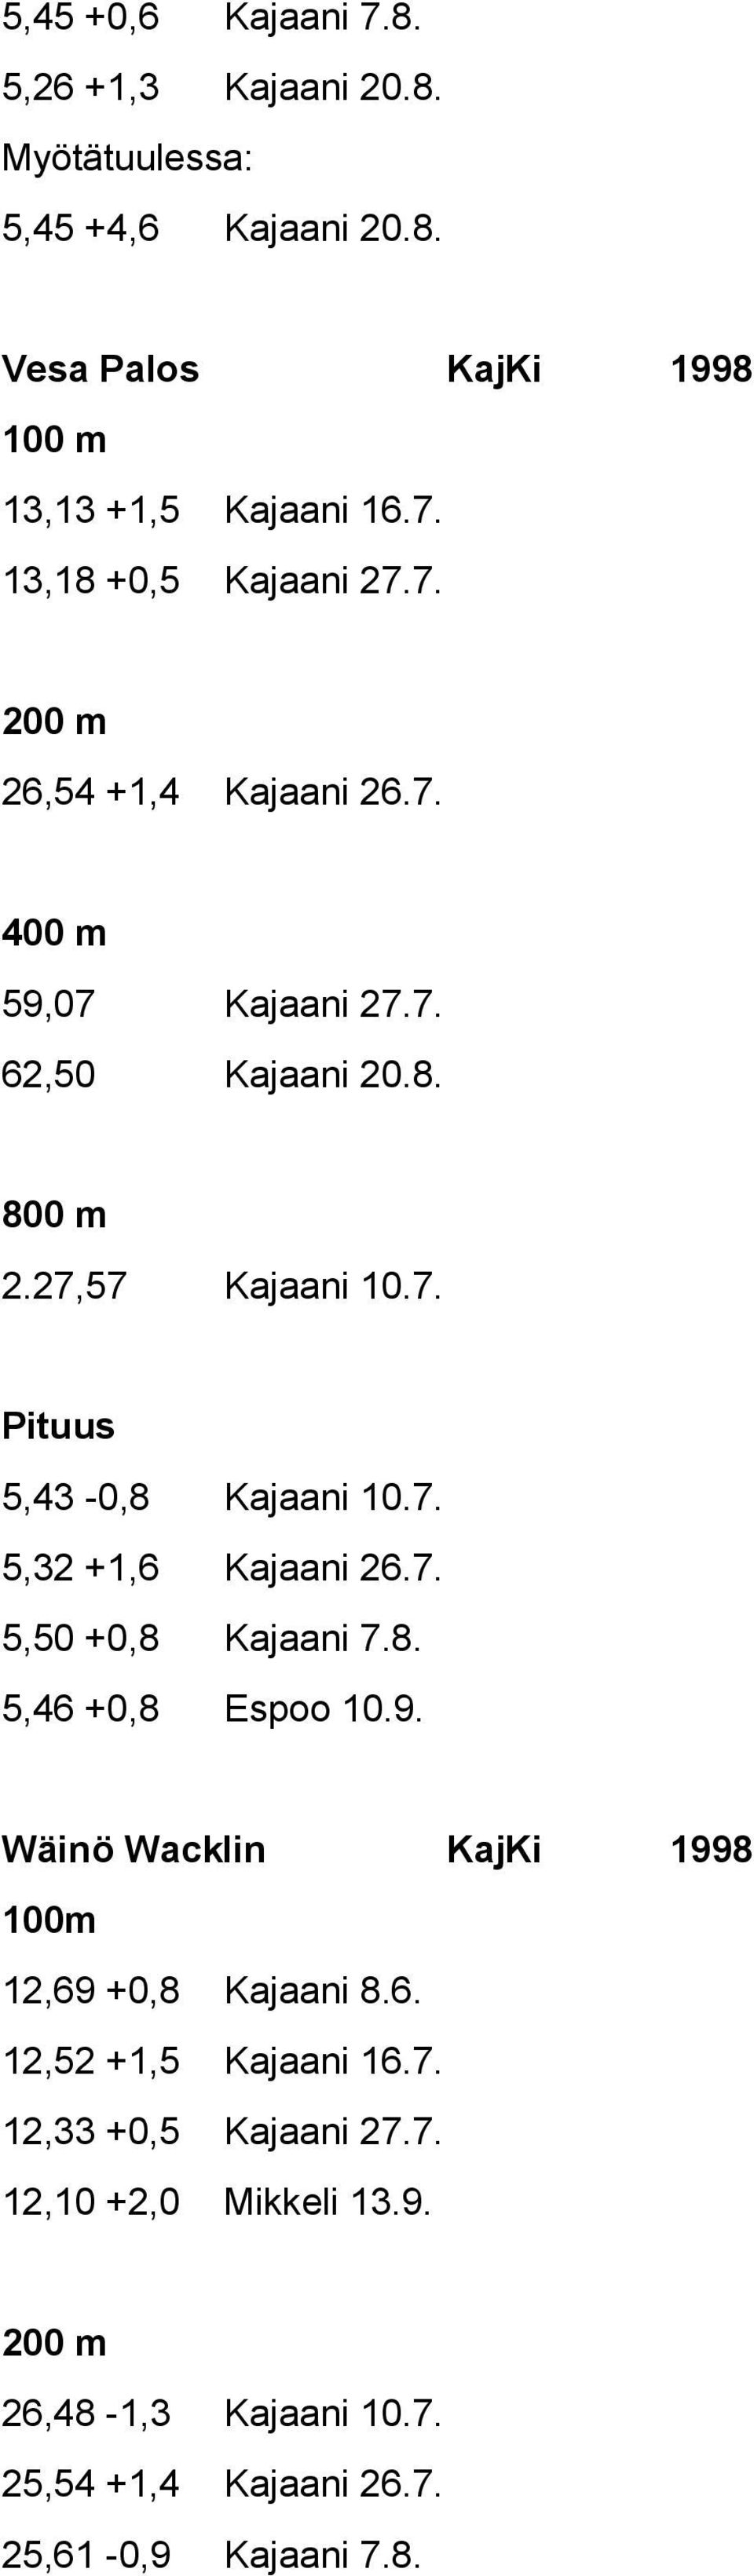 7. 5,50 +0,8 Kajaani 7.8. 5,46 +0,8 Espoo 10.9. Wäinö Wacklin KajKi 1998 100m 12,69 +0,8 Kajaani 8.6. 12,52 +1,5 Kajaani 16.7. 12,33 +0,5 Kajaani 27.